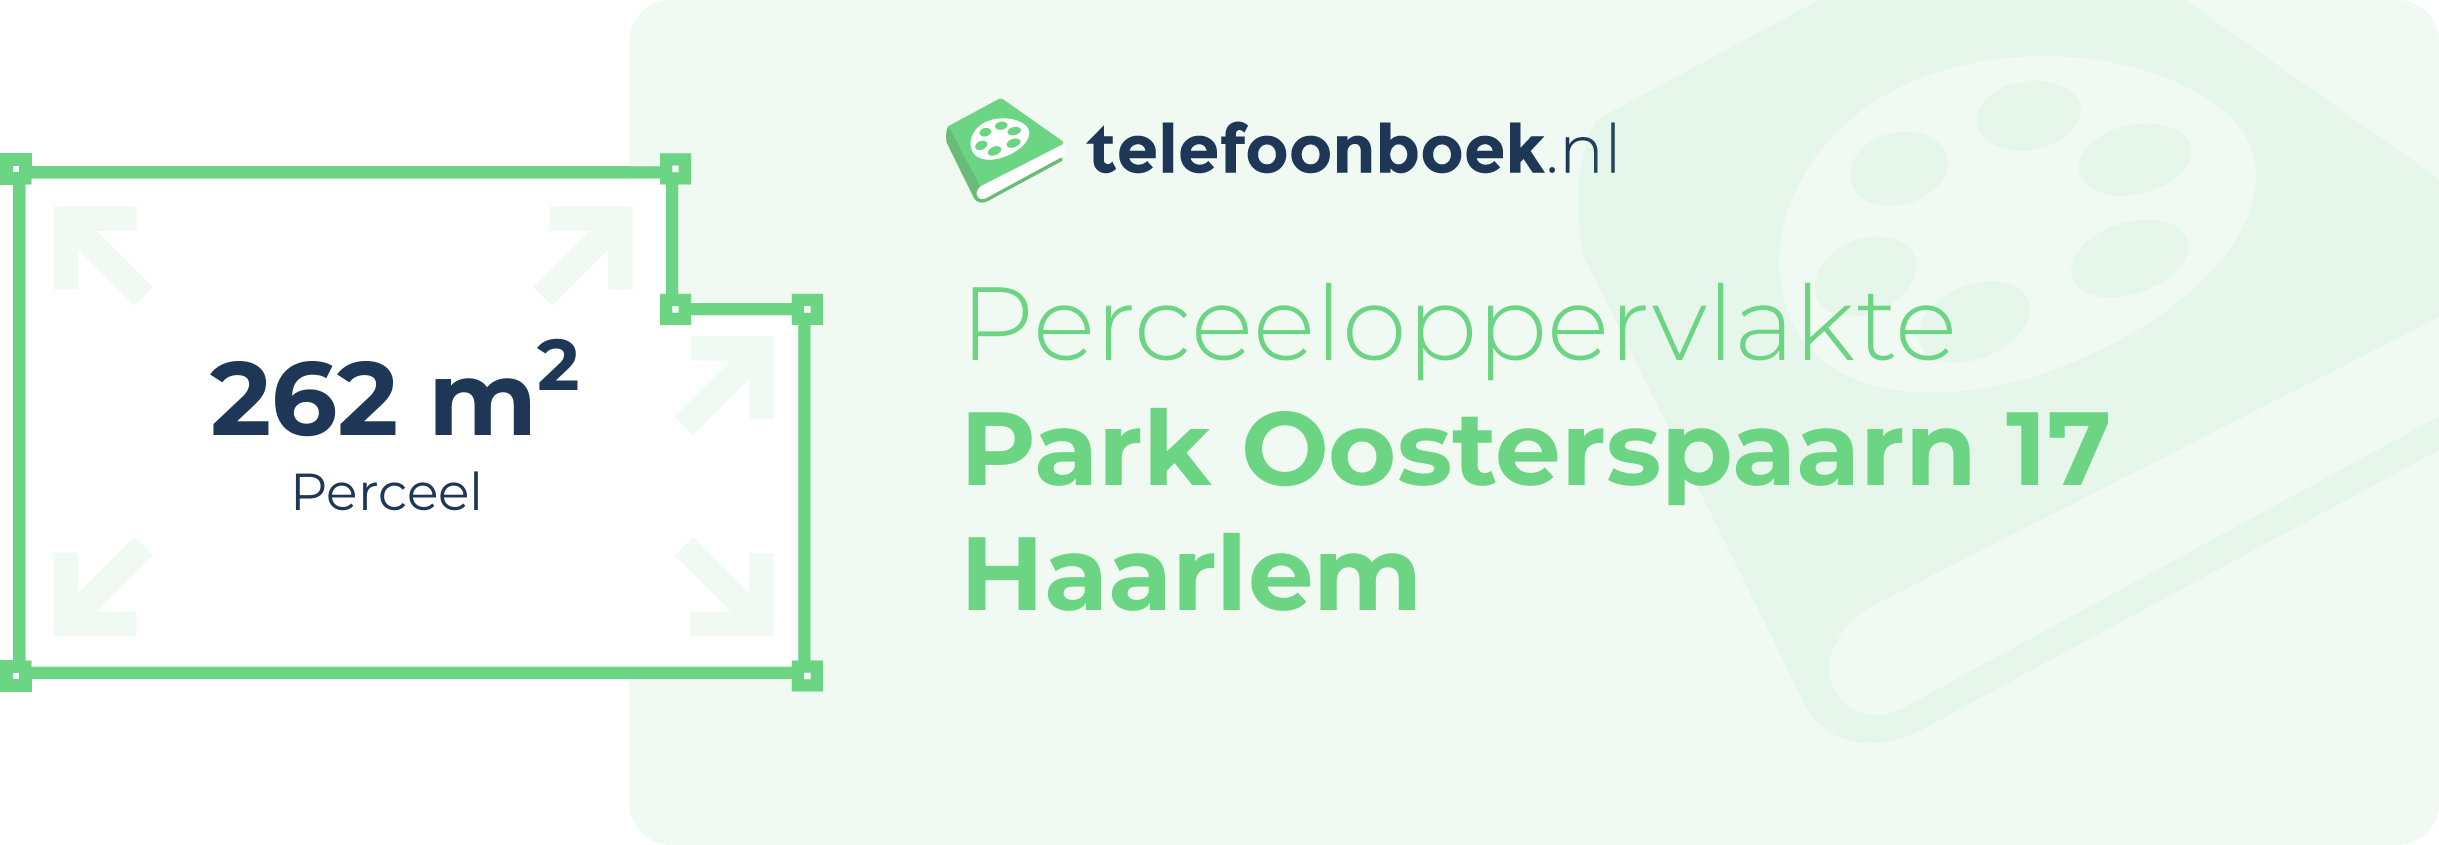 Perceeloppervlakte Park Oosterspaarn 17 Haarlem